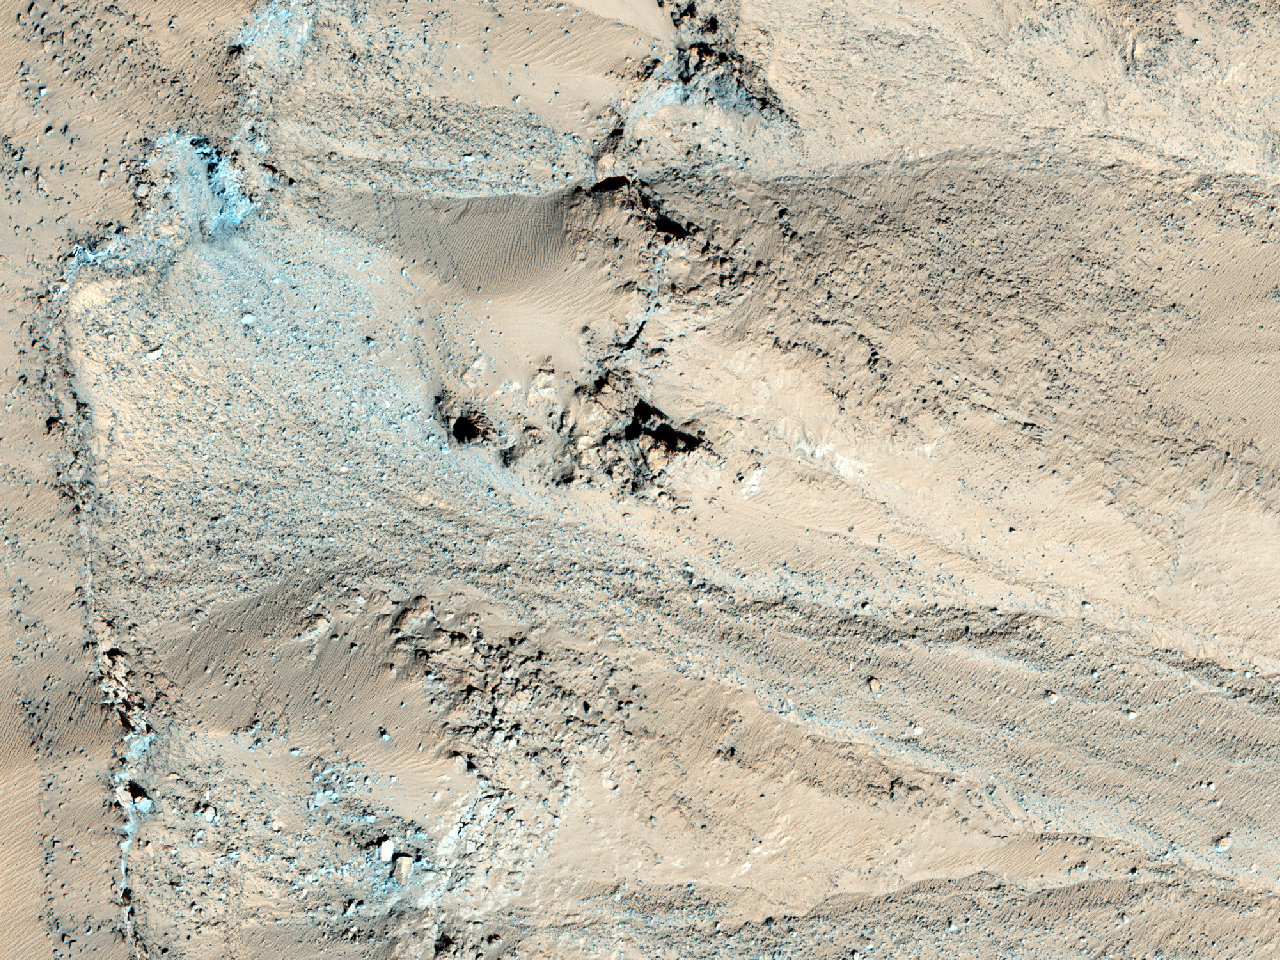 Wąwozy i skała macierzysta na wschodniej stronie Krateru Maunder